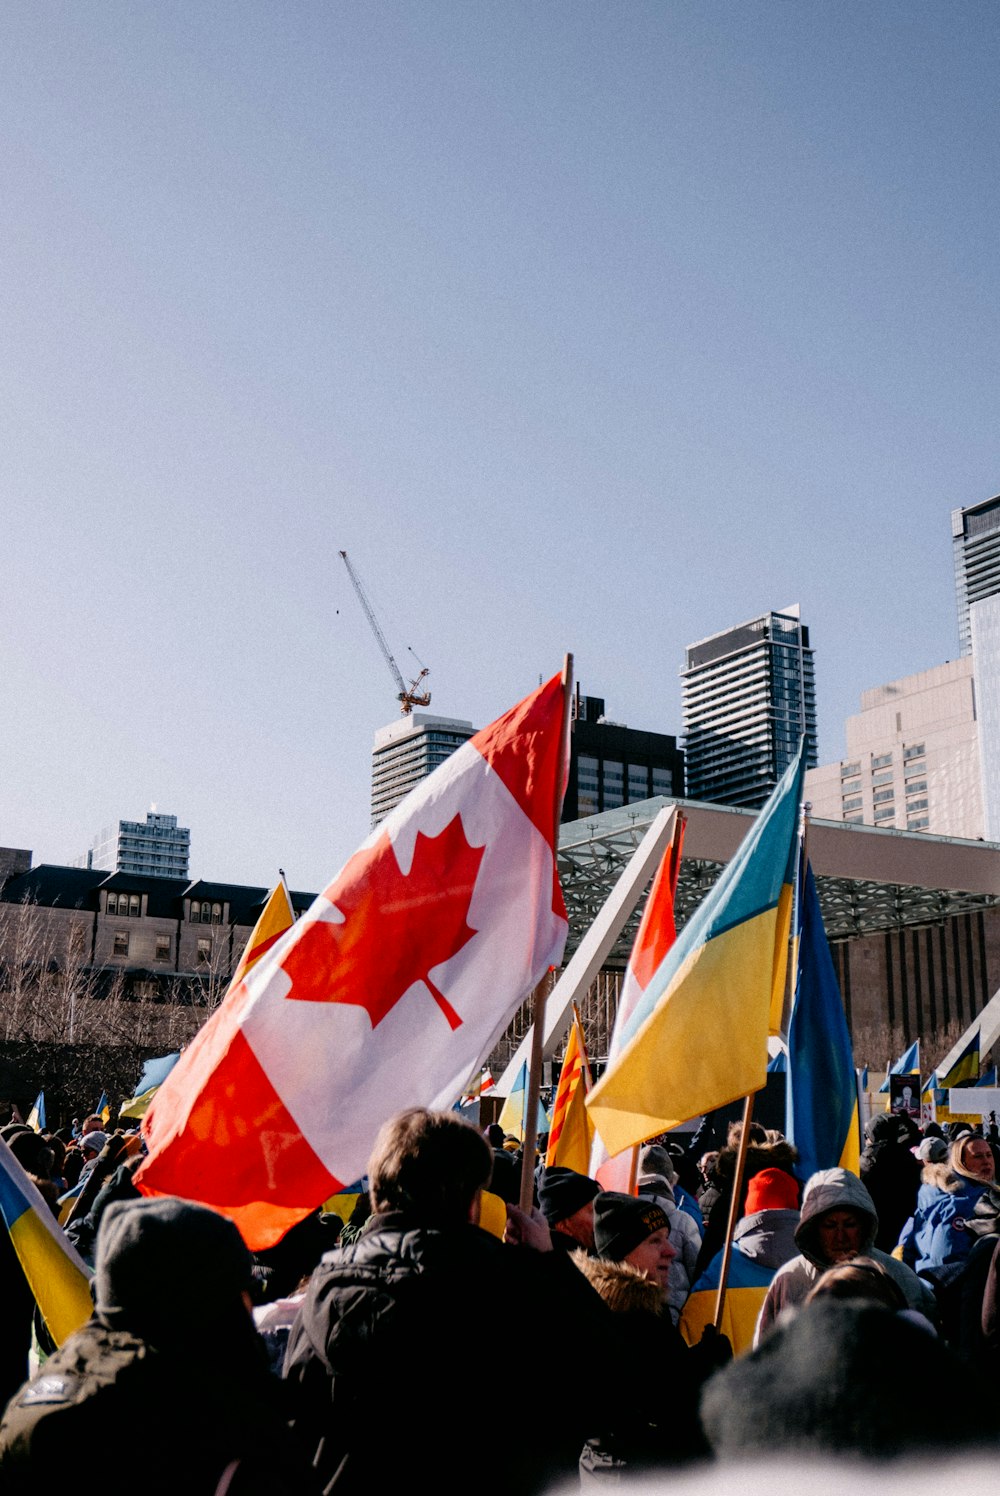 カナダとカナダの国旗を掲げた人々の群衆